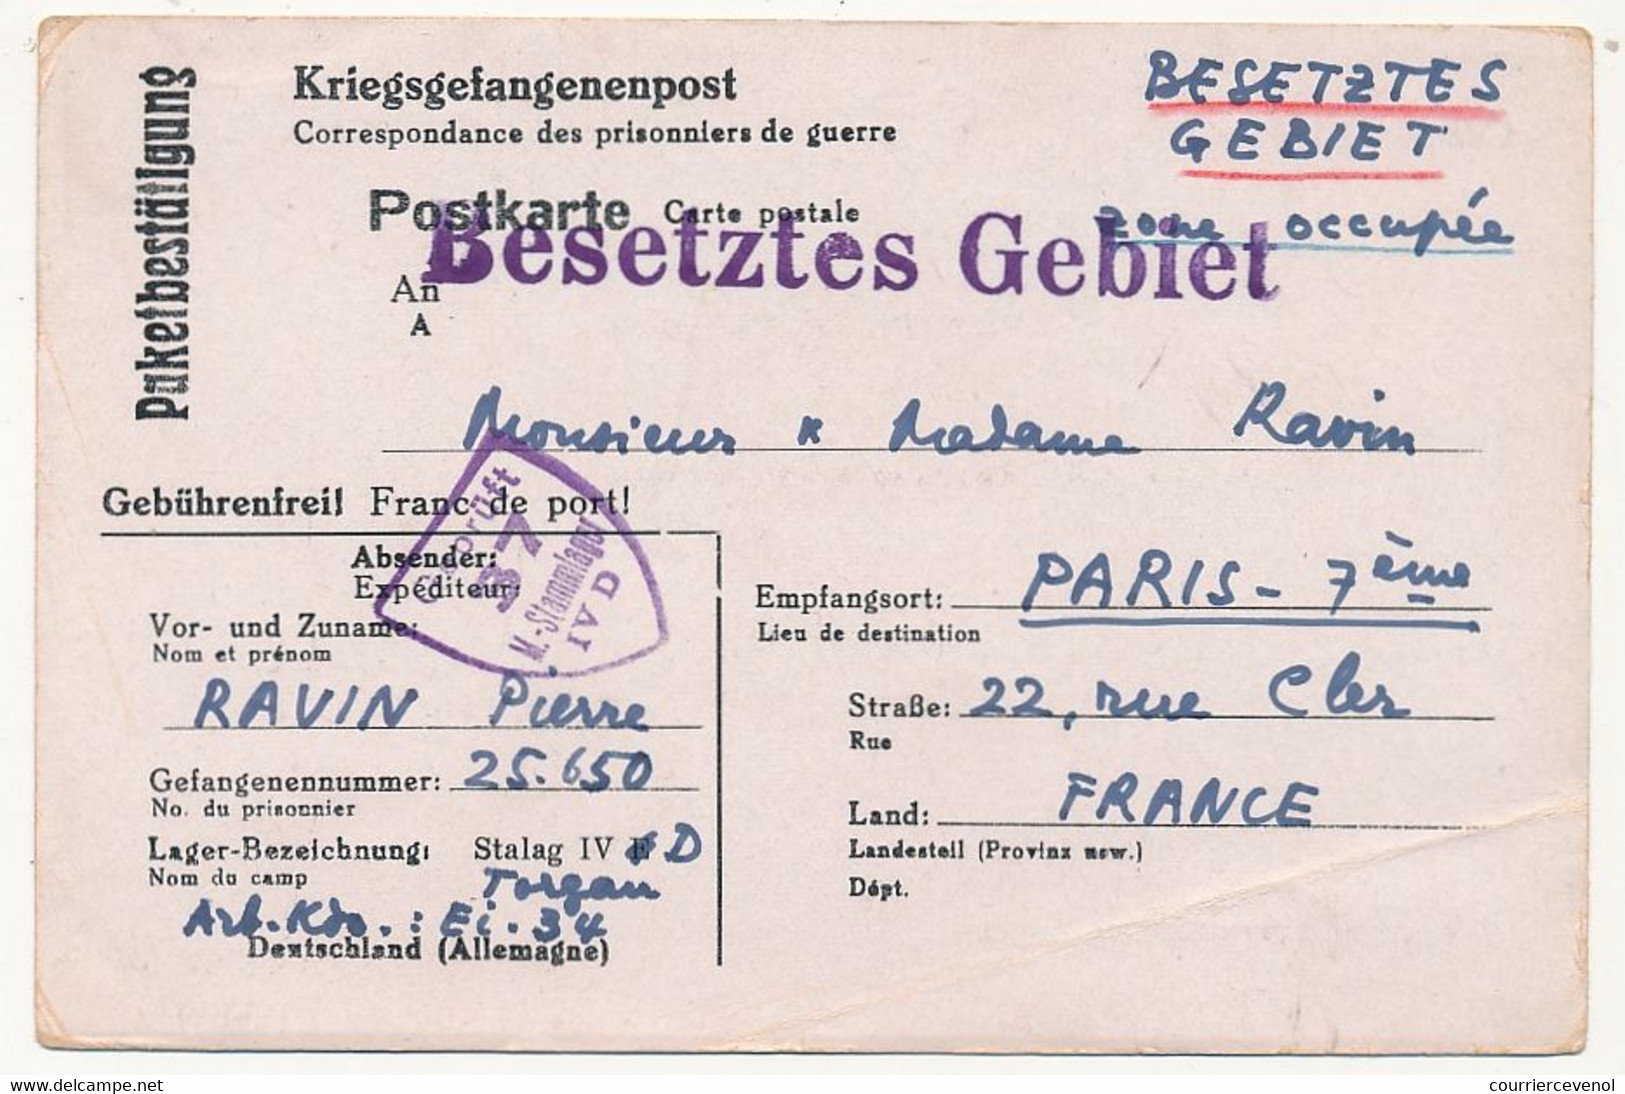 FRANCE - Carte Postale - Avis De Réception De Colis - Stalag IVD Censeur Geprüft 37 - WW II